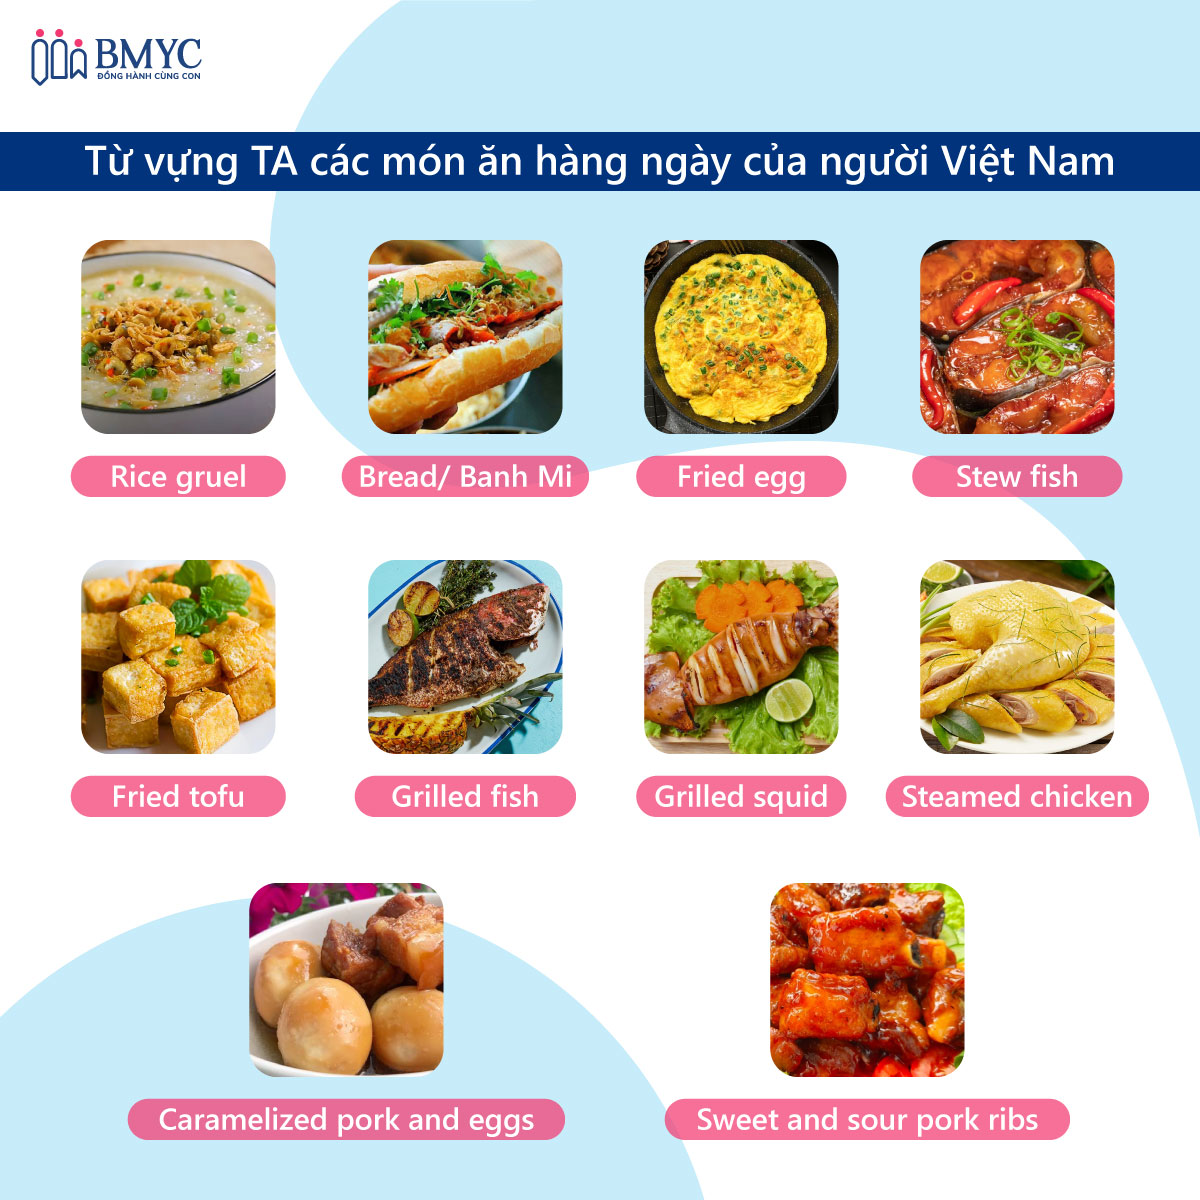 Từ vựng tiếng Anh về món ăn Việt Nam - Món ăn hàng ngày